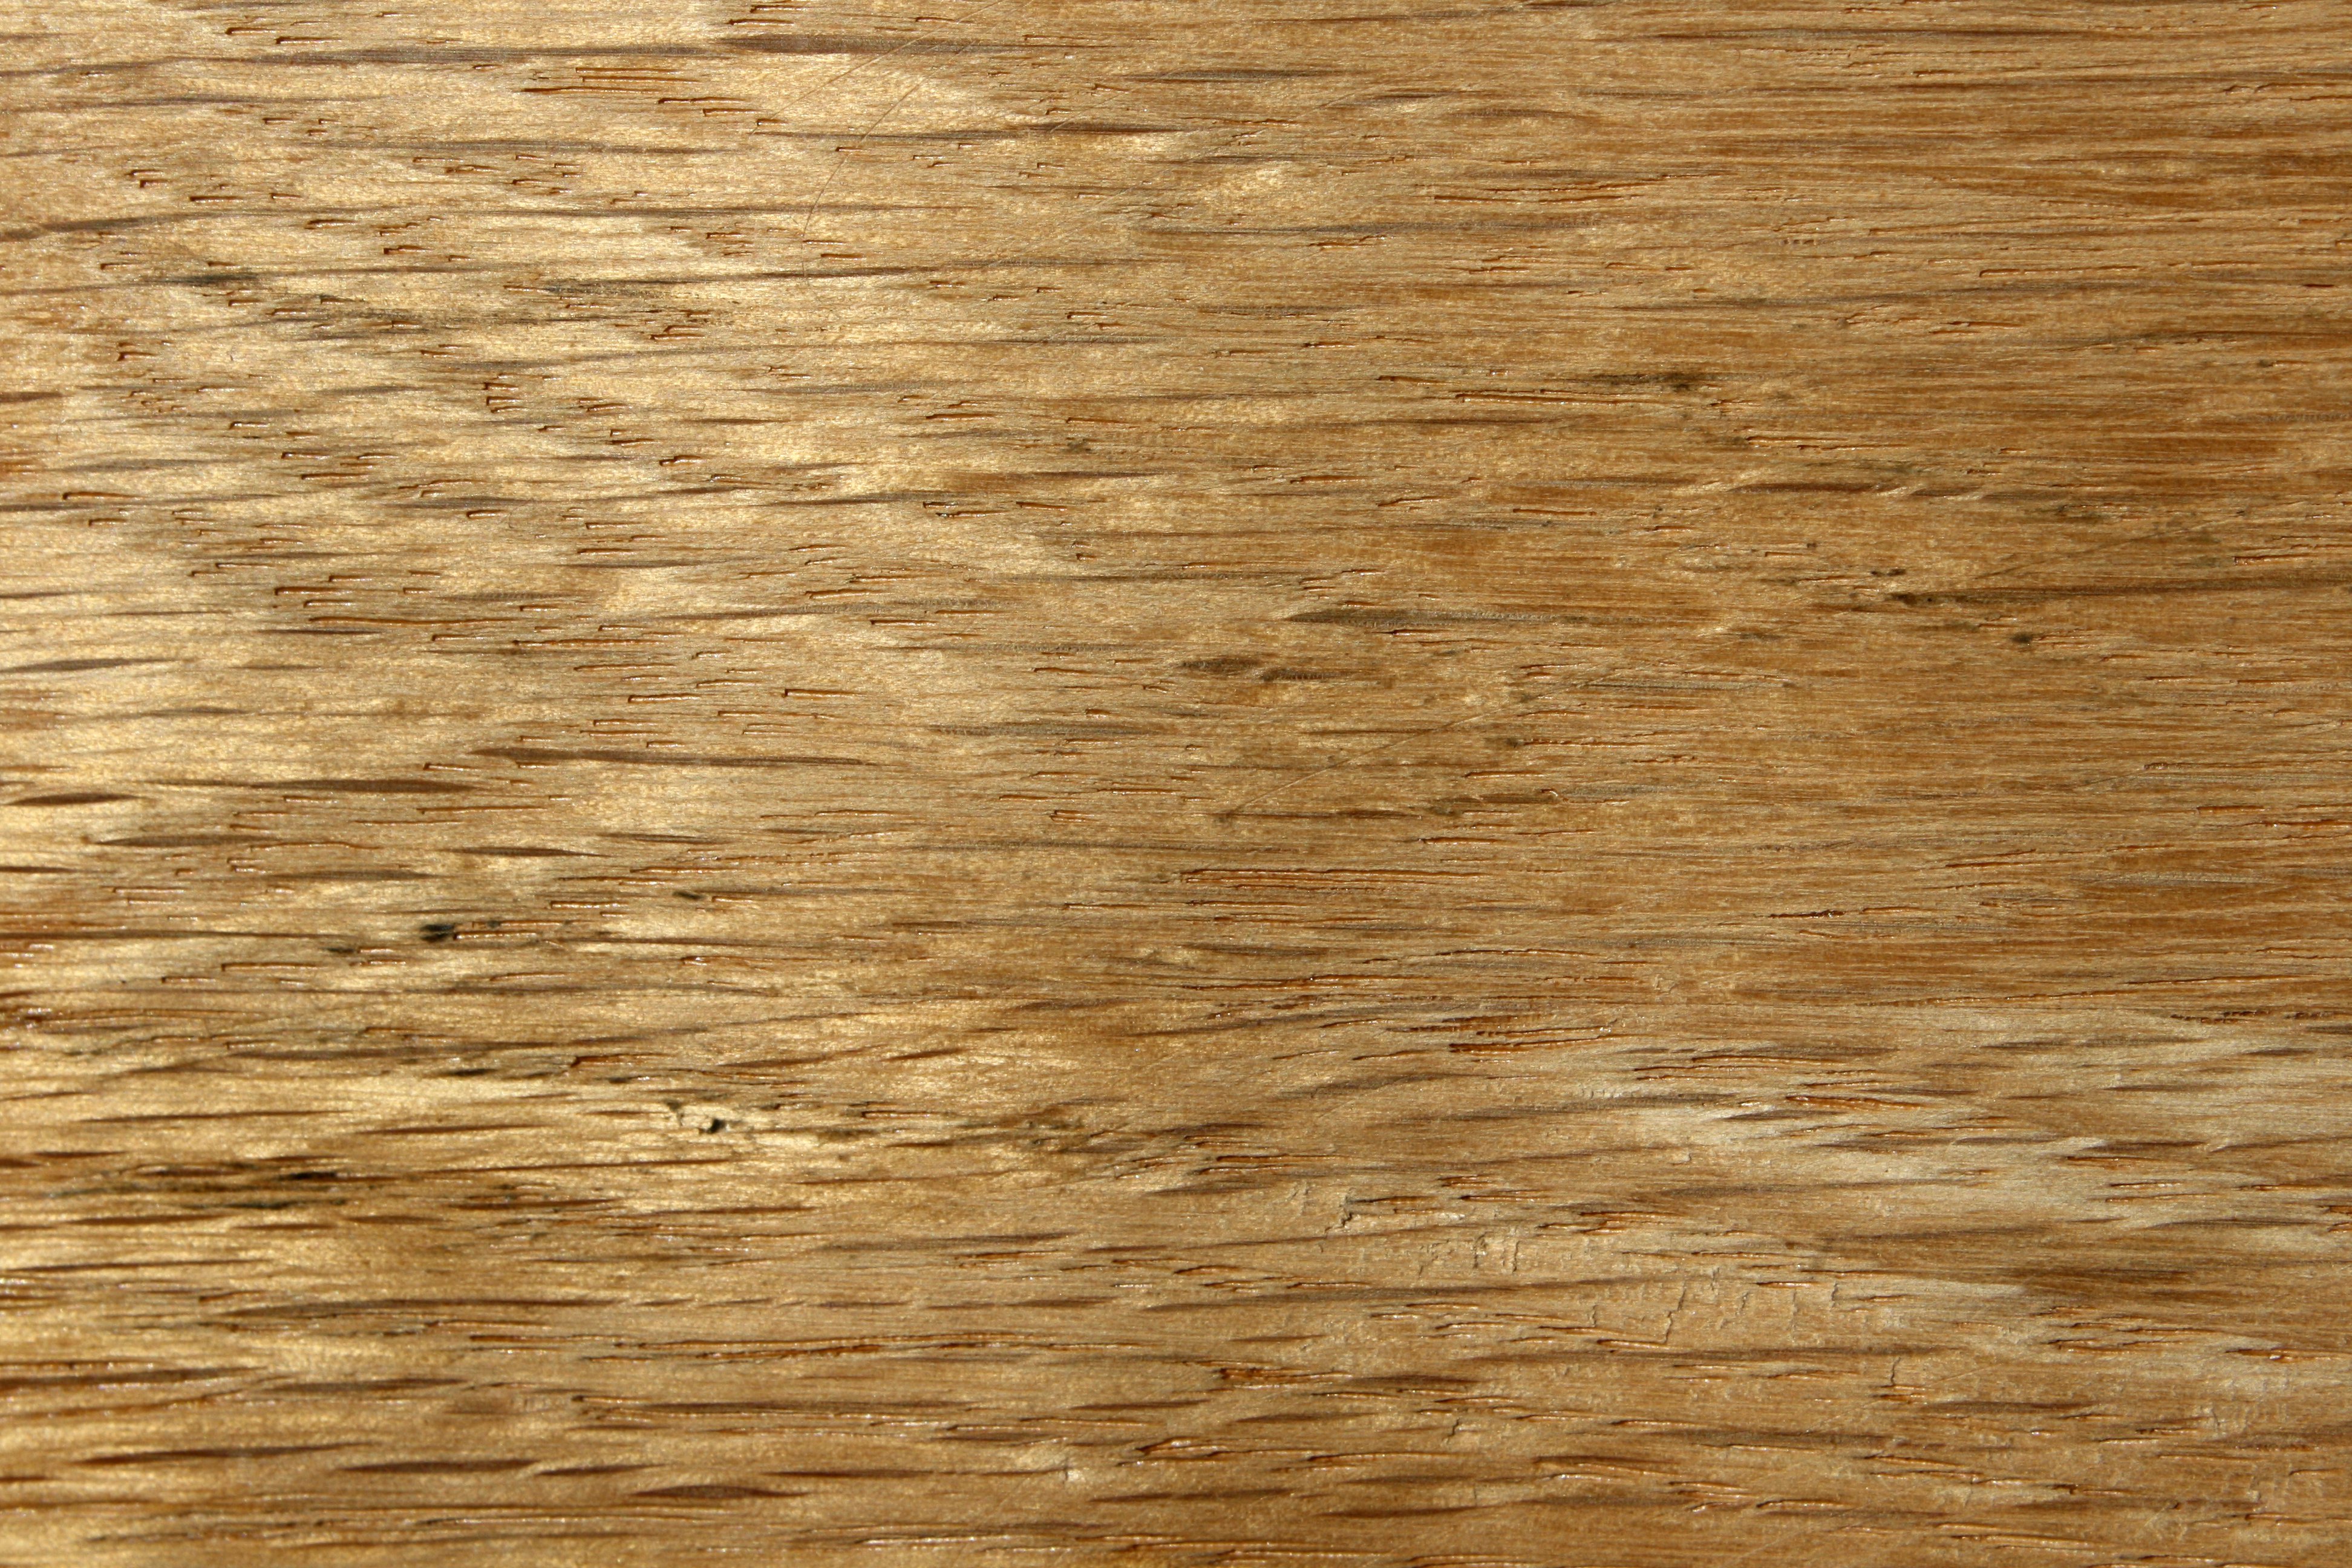 Oak Wood Grain Texture Close Up Picture Photograph Photos